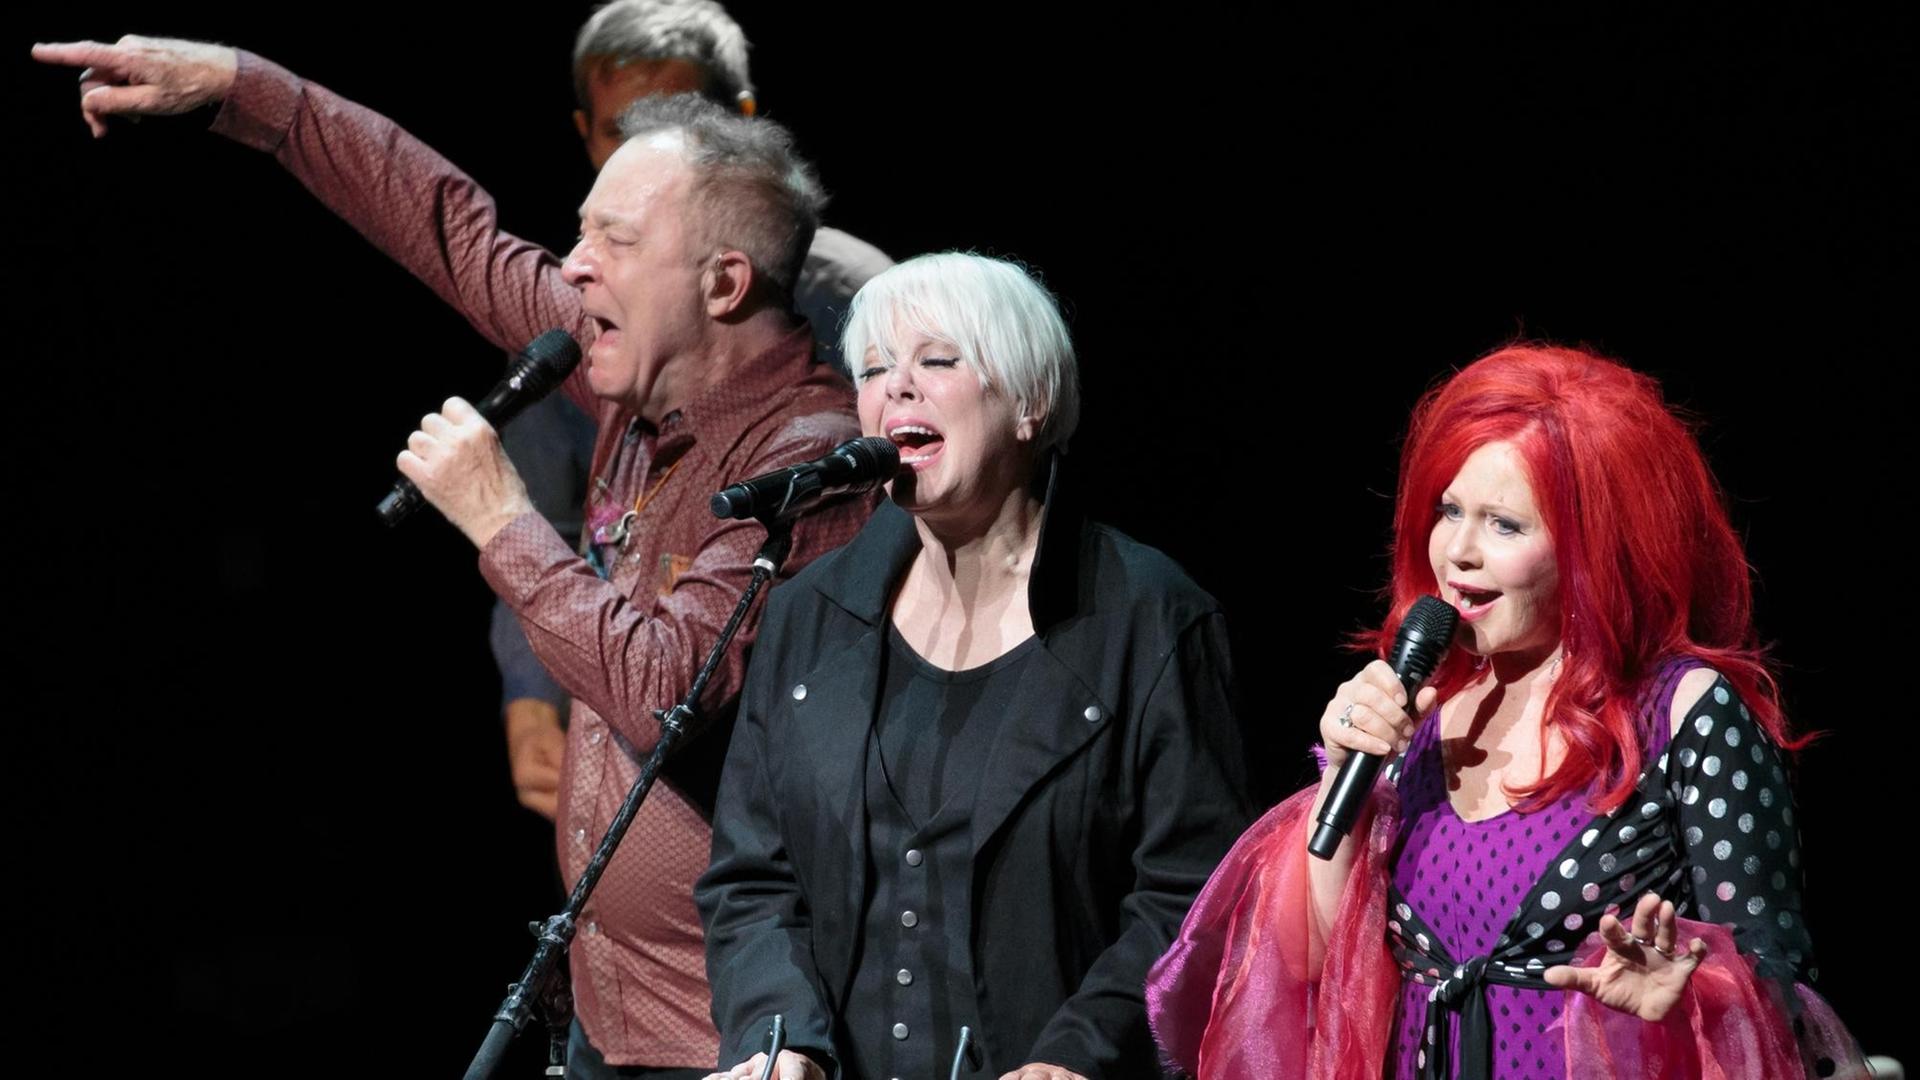 Fred Schneider, Cindy Wilson und Kate Pierson von The B-52s bei einem Konzert in Austin im Mai 2017